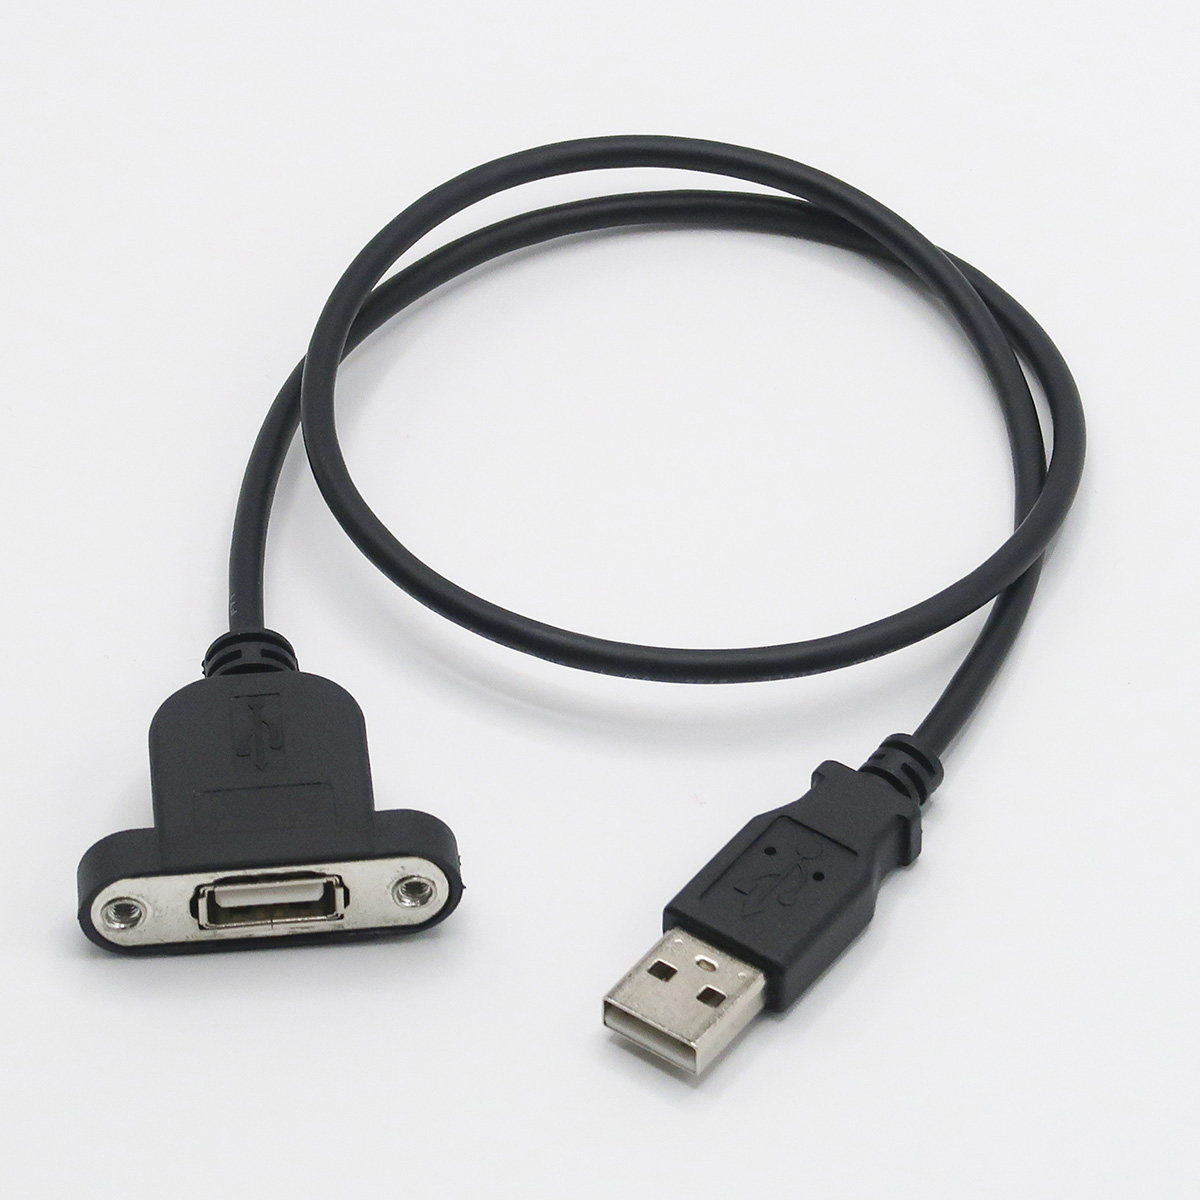 通信用延長ケーブル0.5m(USB[A][A](メス･オス))パネルマウントタイプ